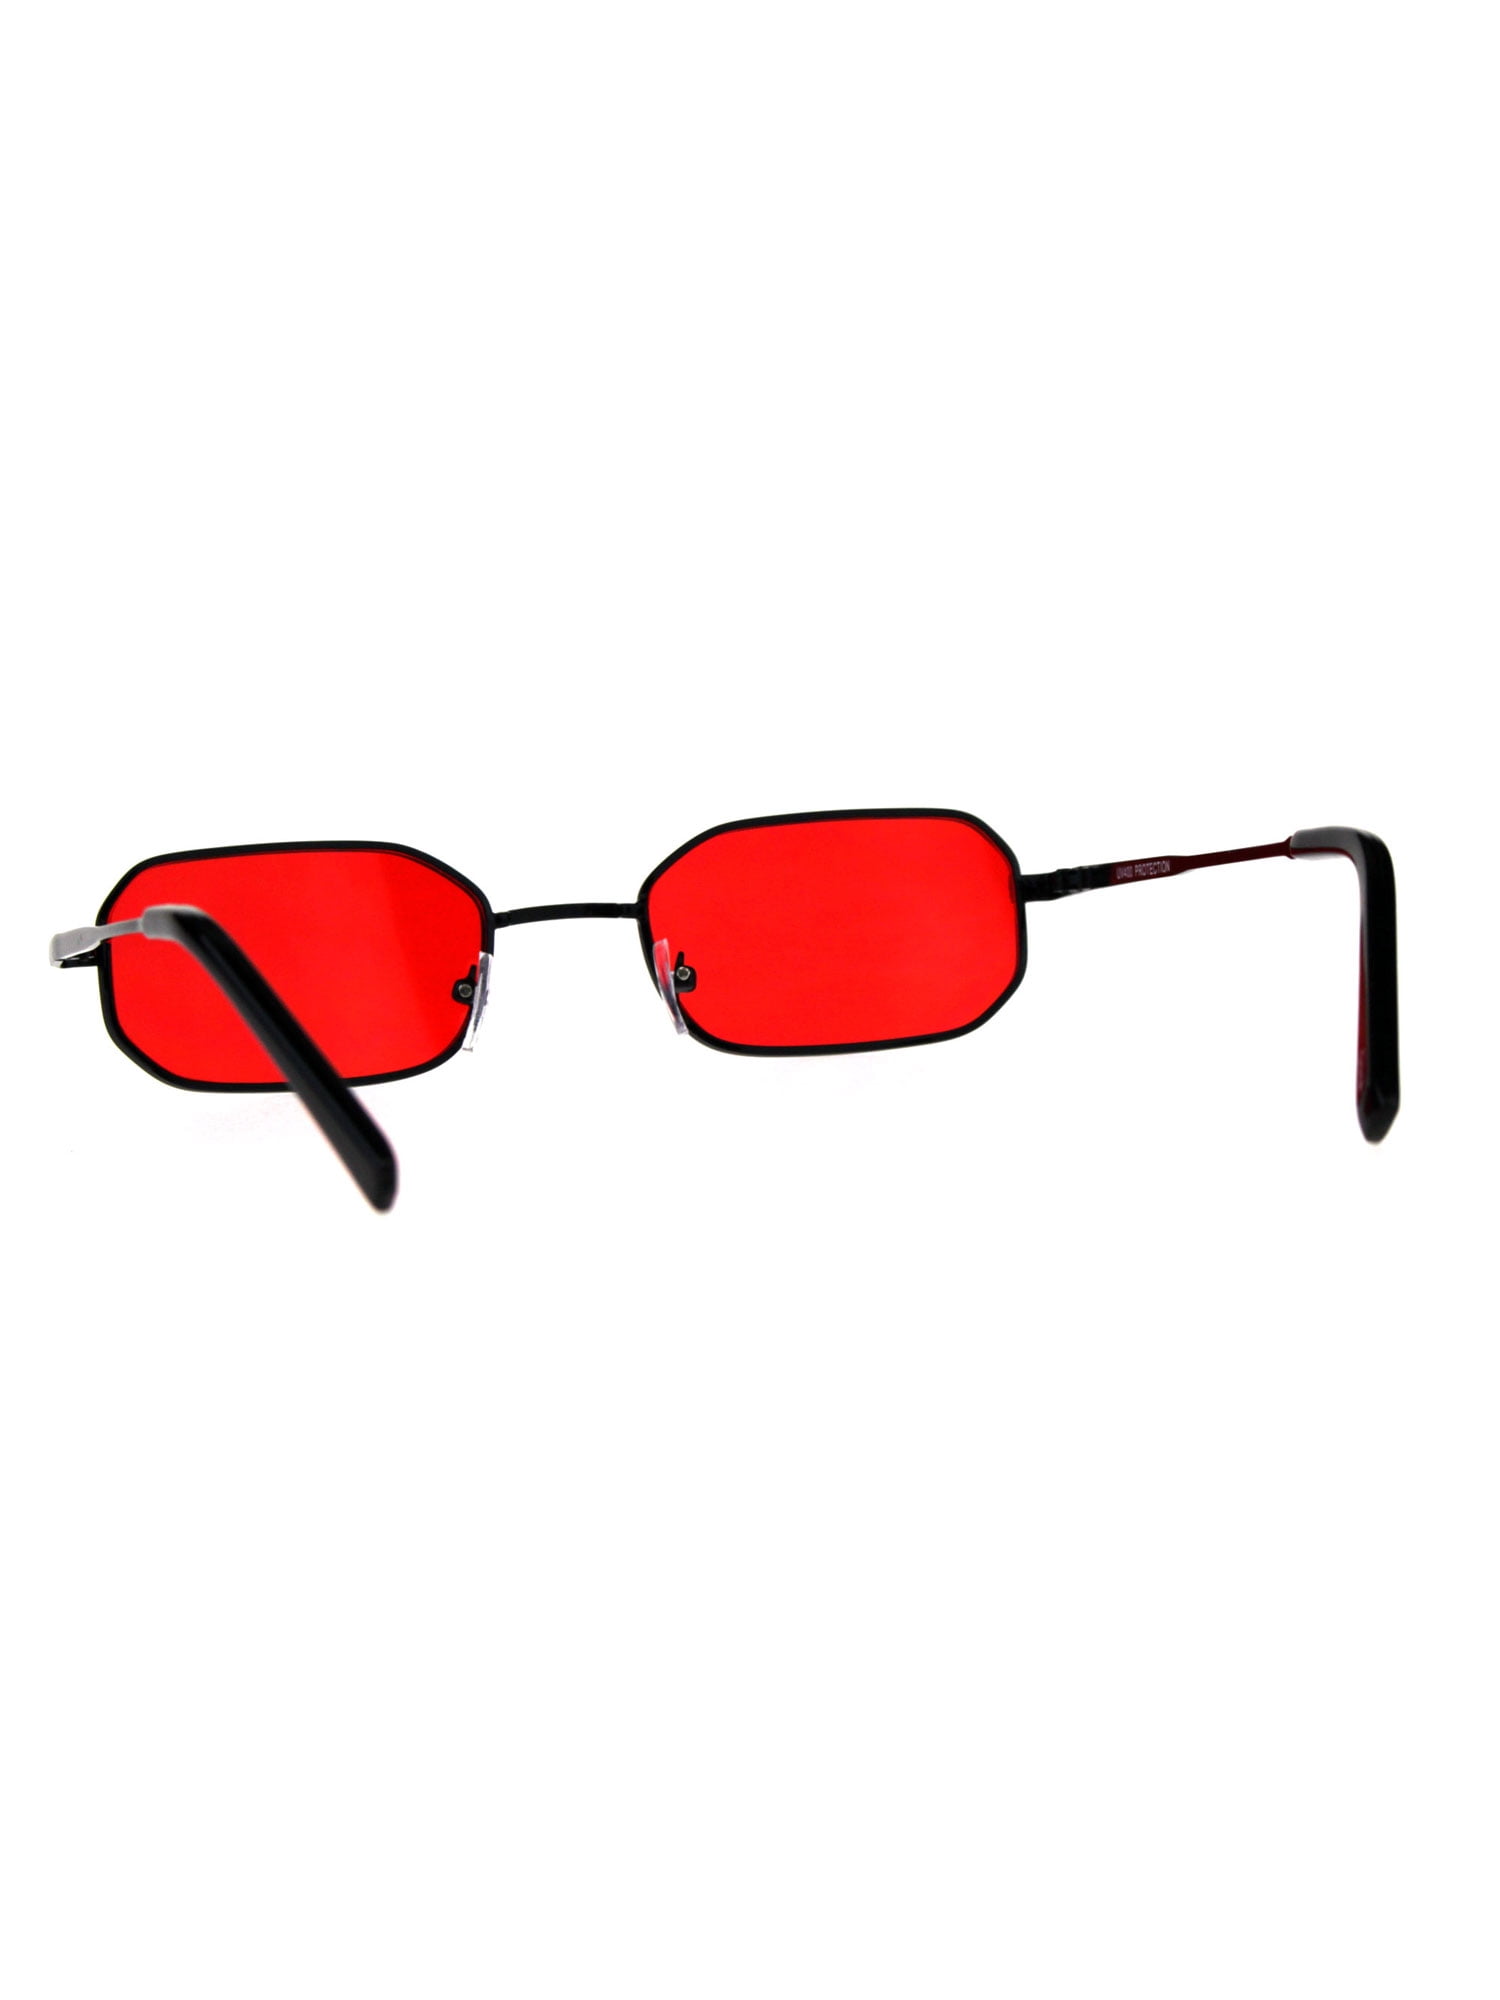 DOCTIST Trendy Rectangle Sunglasses for men Women Narrow Square Frame Shade  100% UV Blocking red